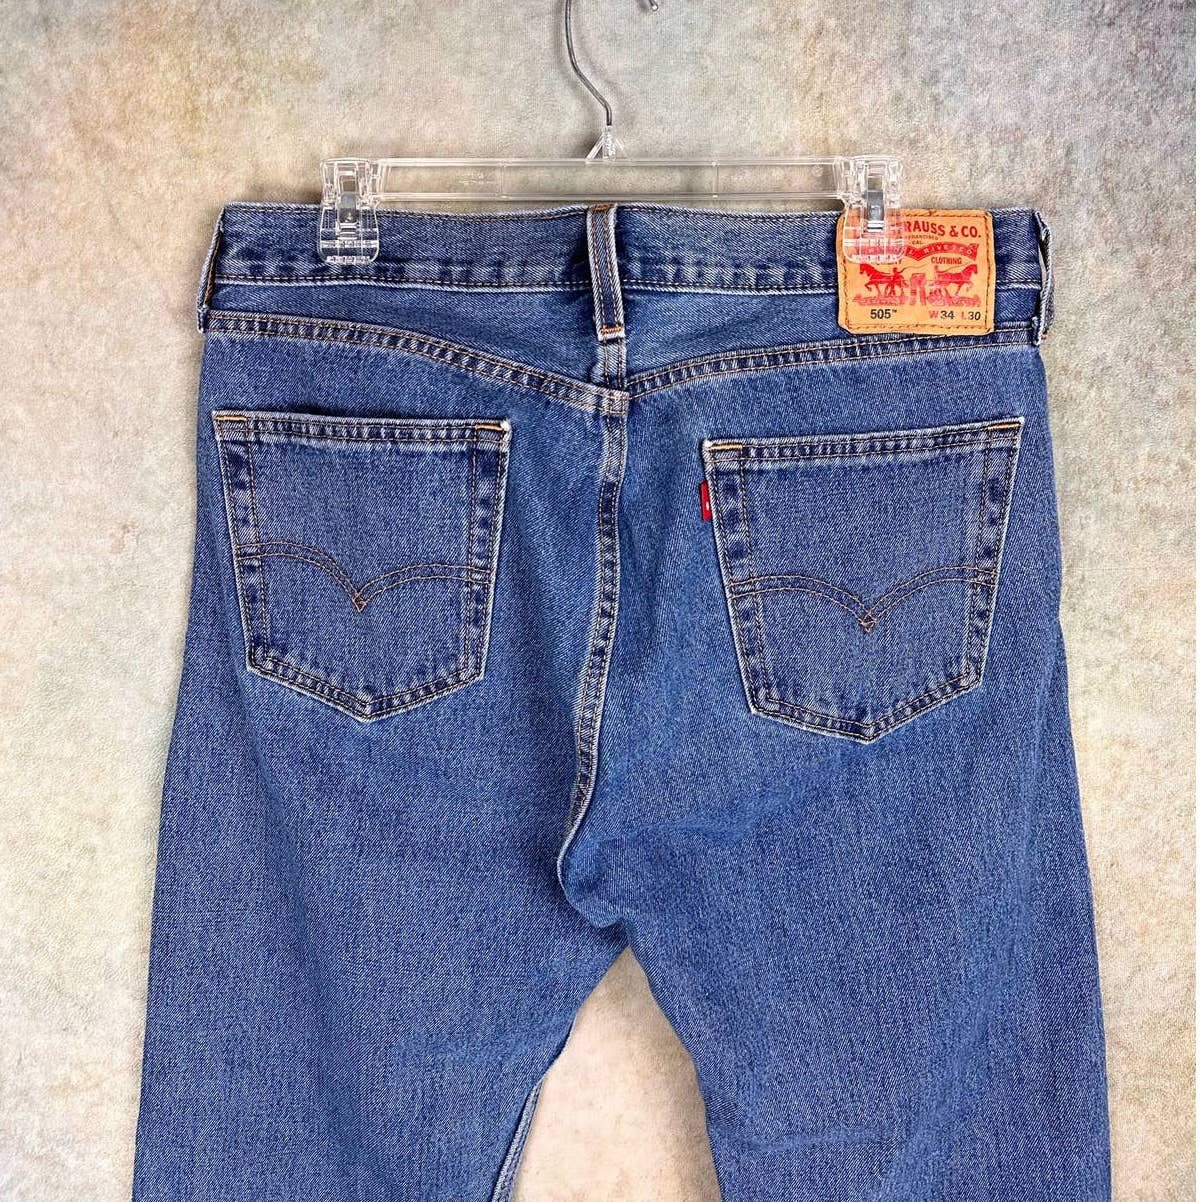 Vintage Levis 505 Denim Jeans 34x30